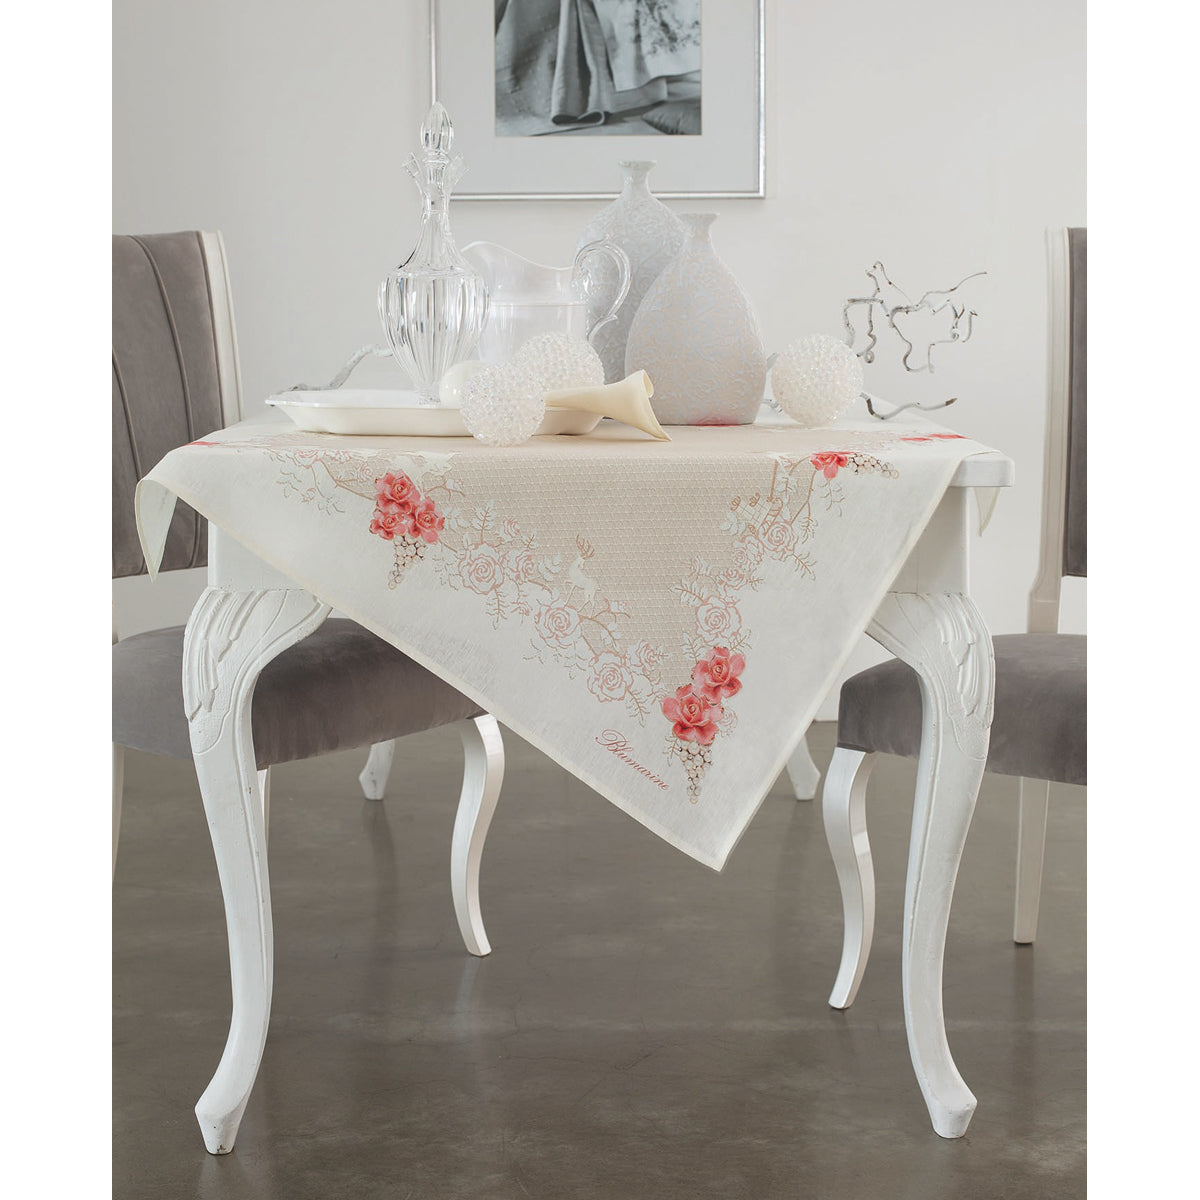 Decorative tablecloth Preziosa Blumarine 88x88